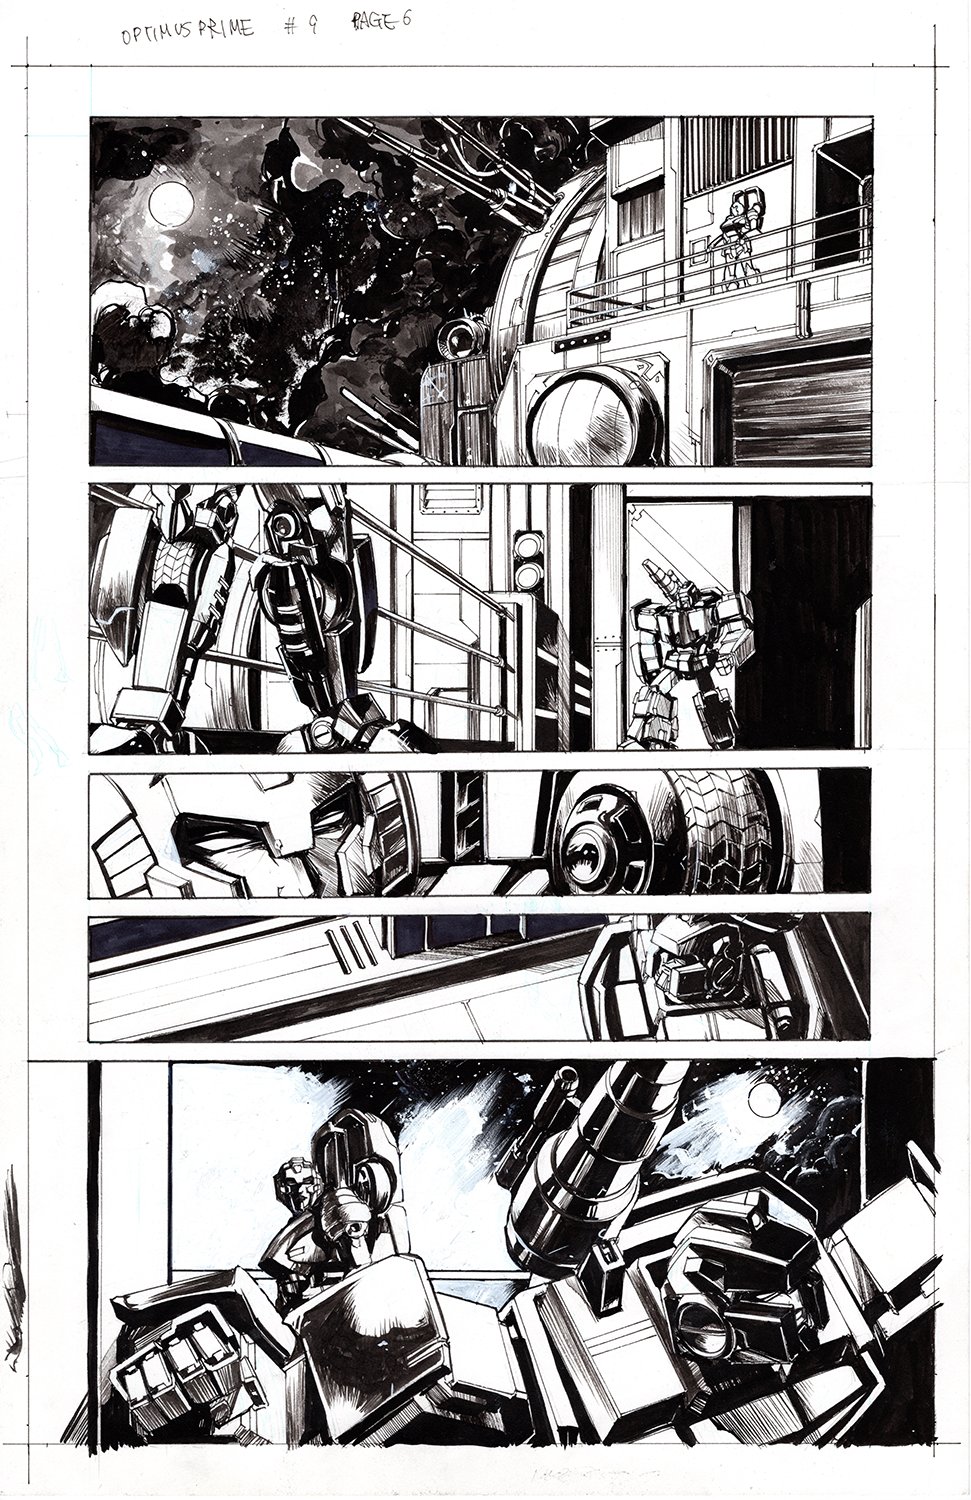 Optimus Prime #9 Page 06